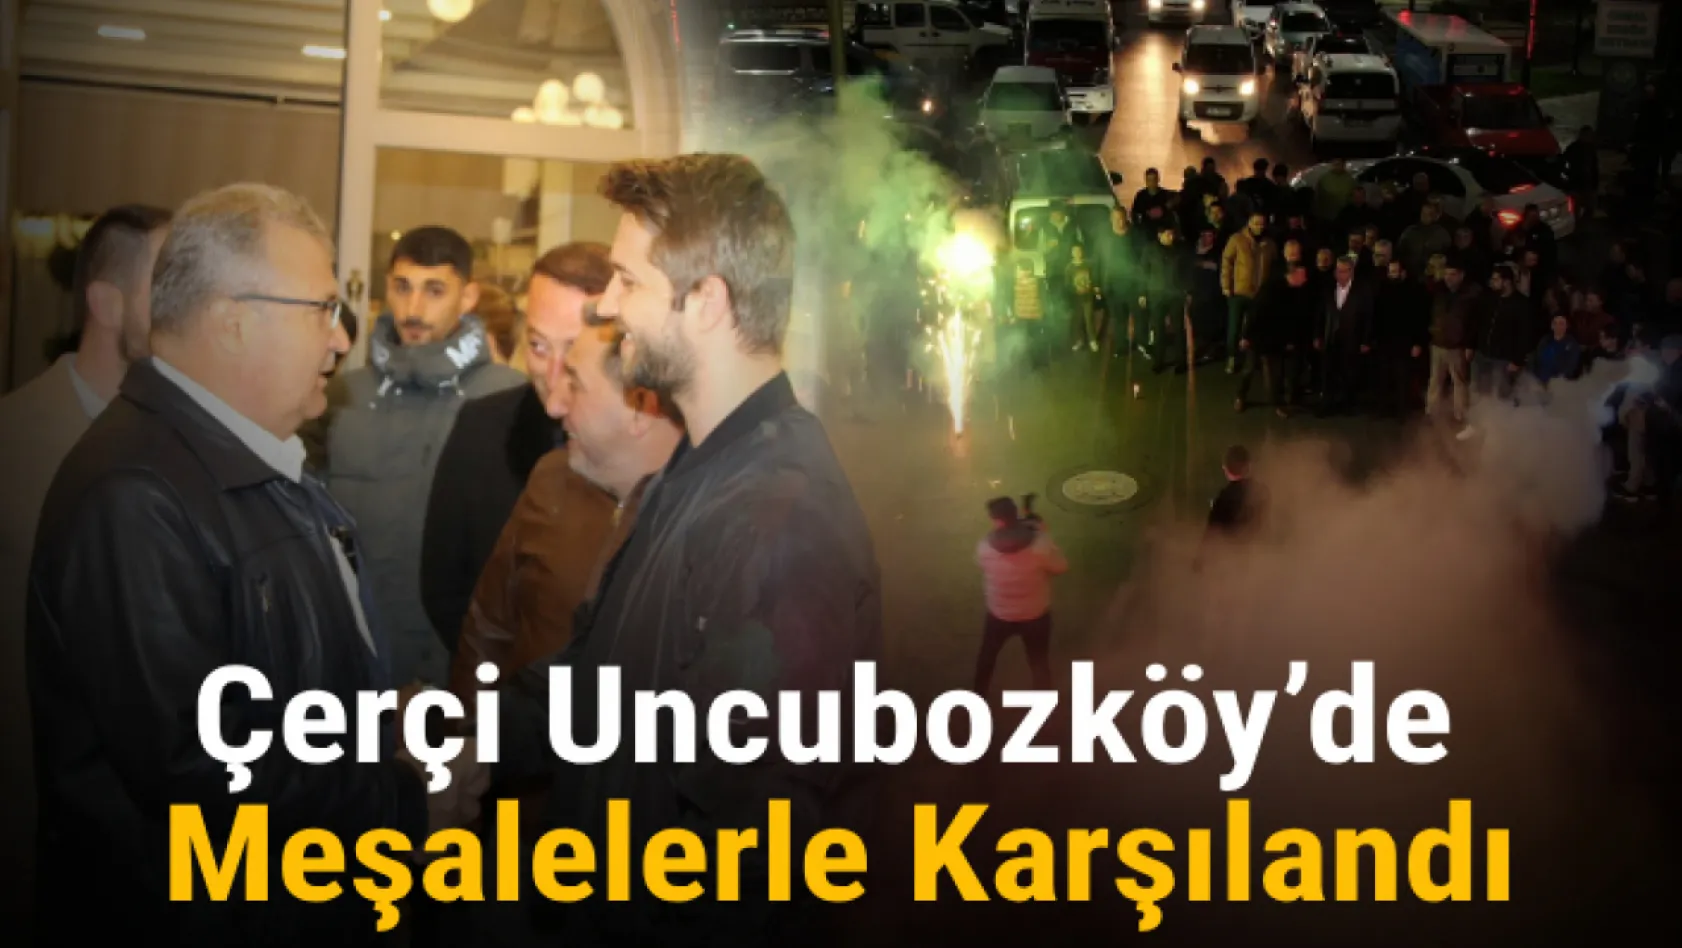 Çerçi Uncubozköy'de Meşalelerle Karşılandı